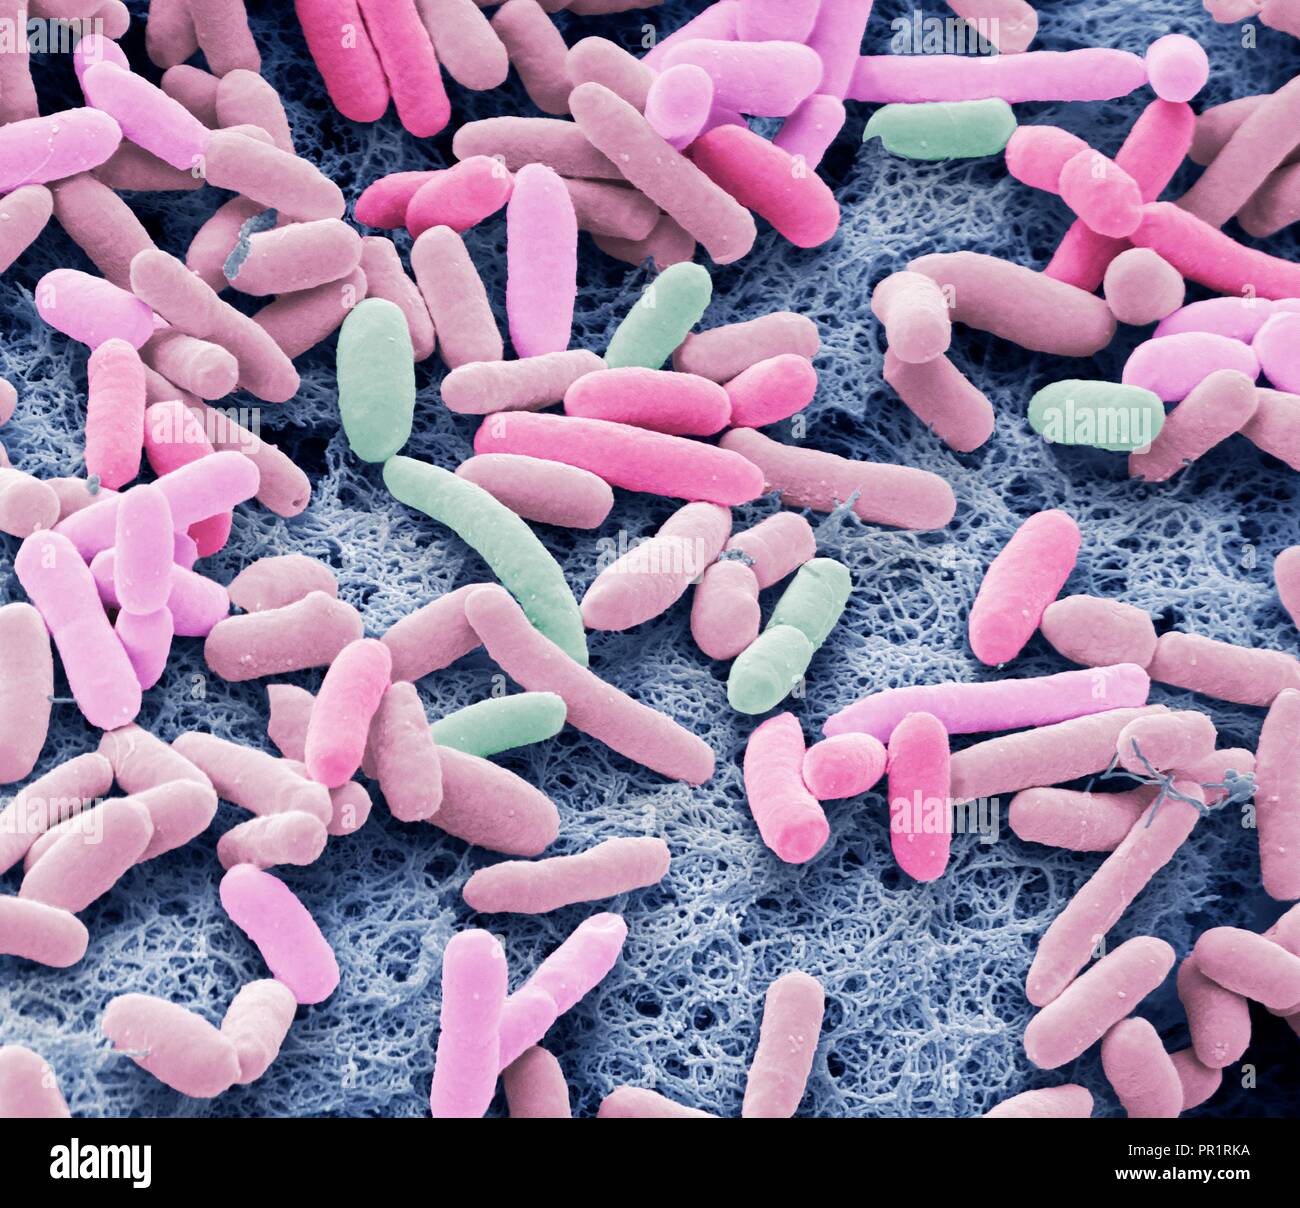 E coli bakterien im menschlichen darm -Fotos -Bildmaterial in hoher Auflösung – Alamy